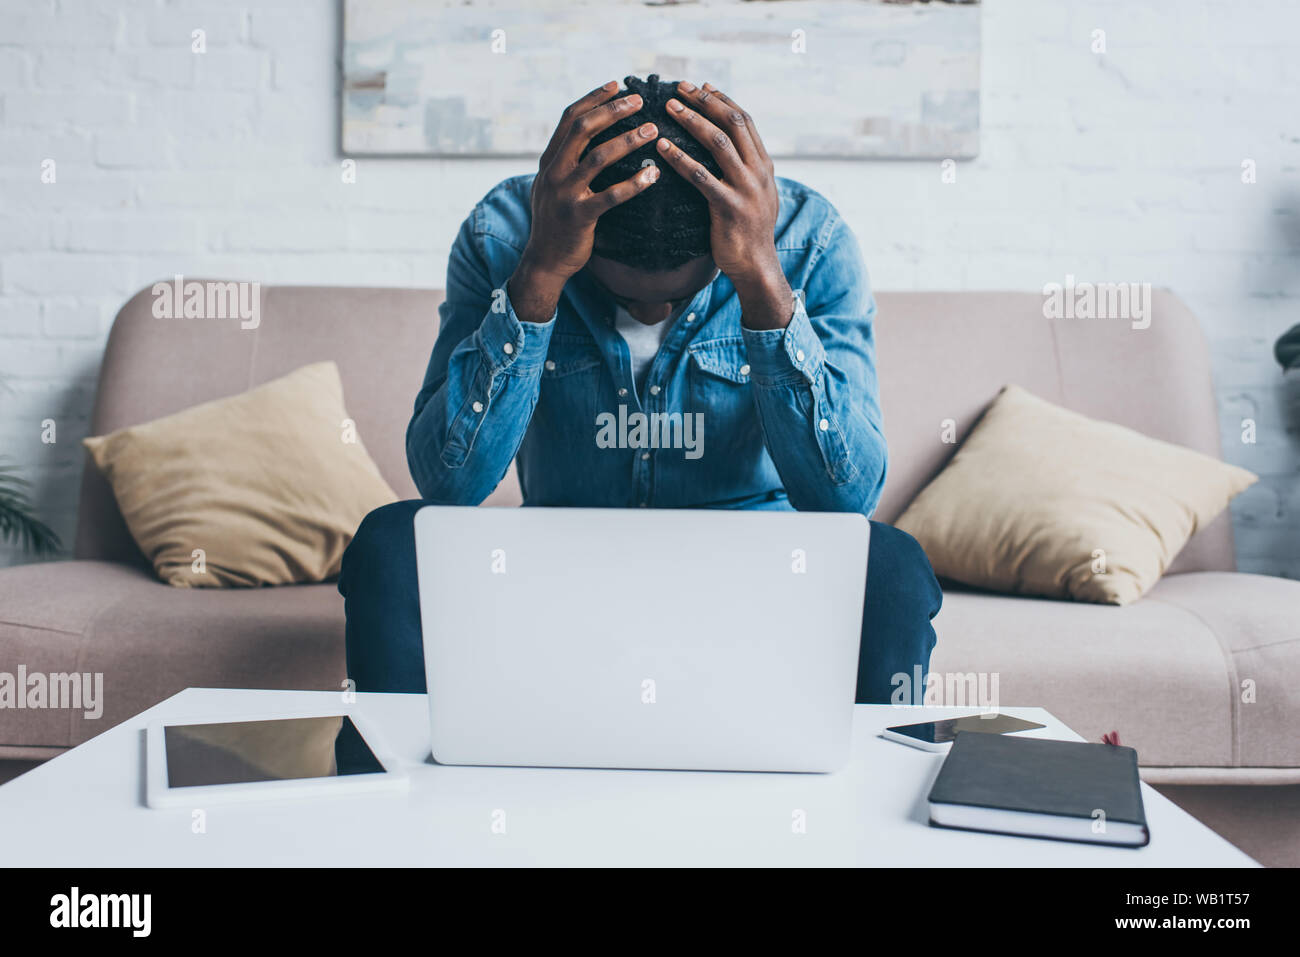 Stanco americano africano l uomo che soffre di mal di testa mentre è seduto vicino a tavola con i gadget Foto Stock